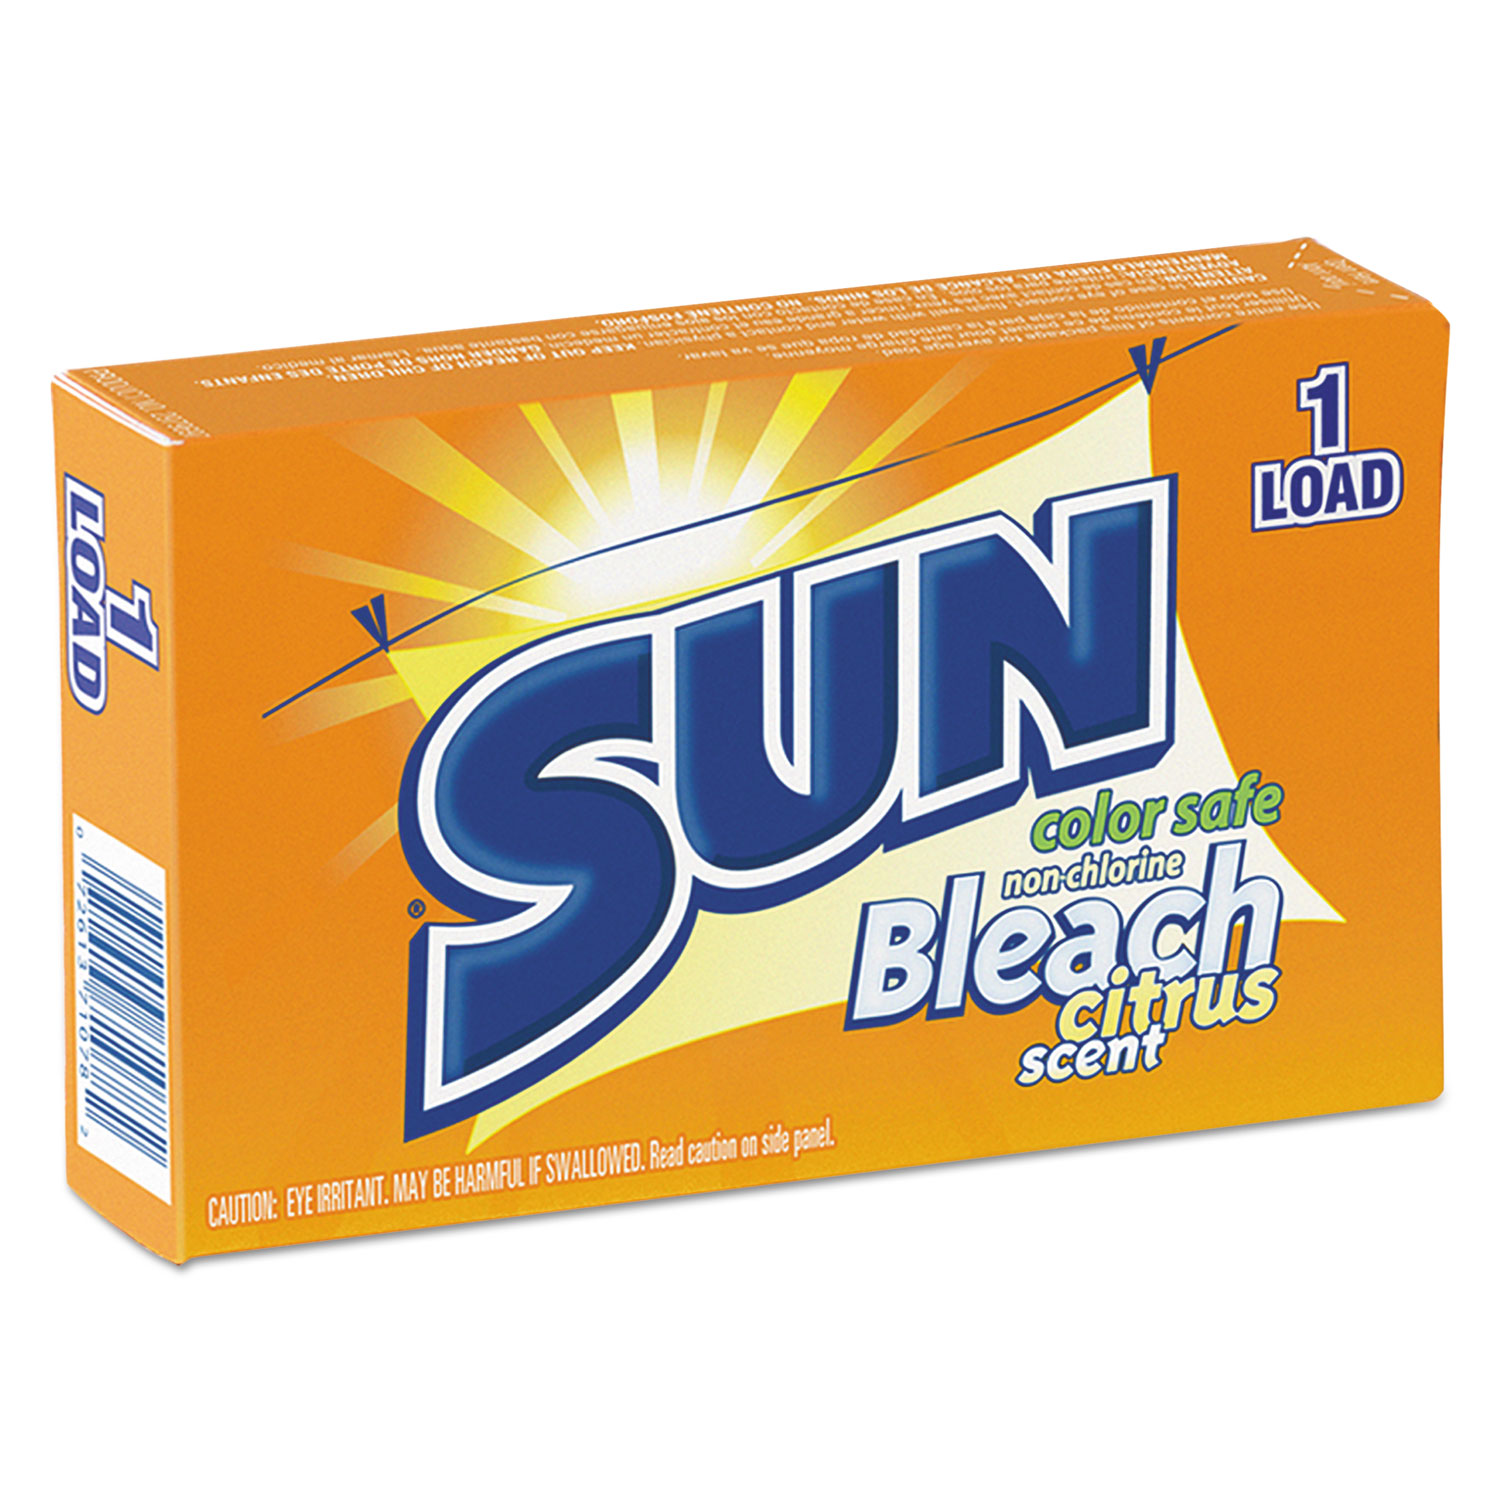  SUN VEN 2979697 Color Safe Powder Bleach, Vend Pack, 1 load Box, 100/Carton (VEN2979697) 